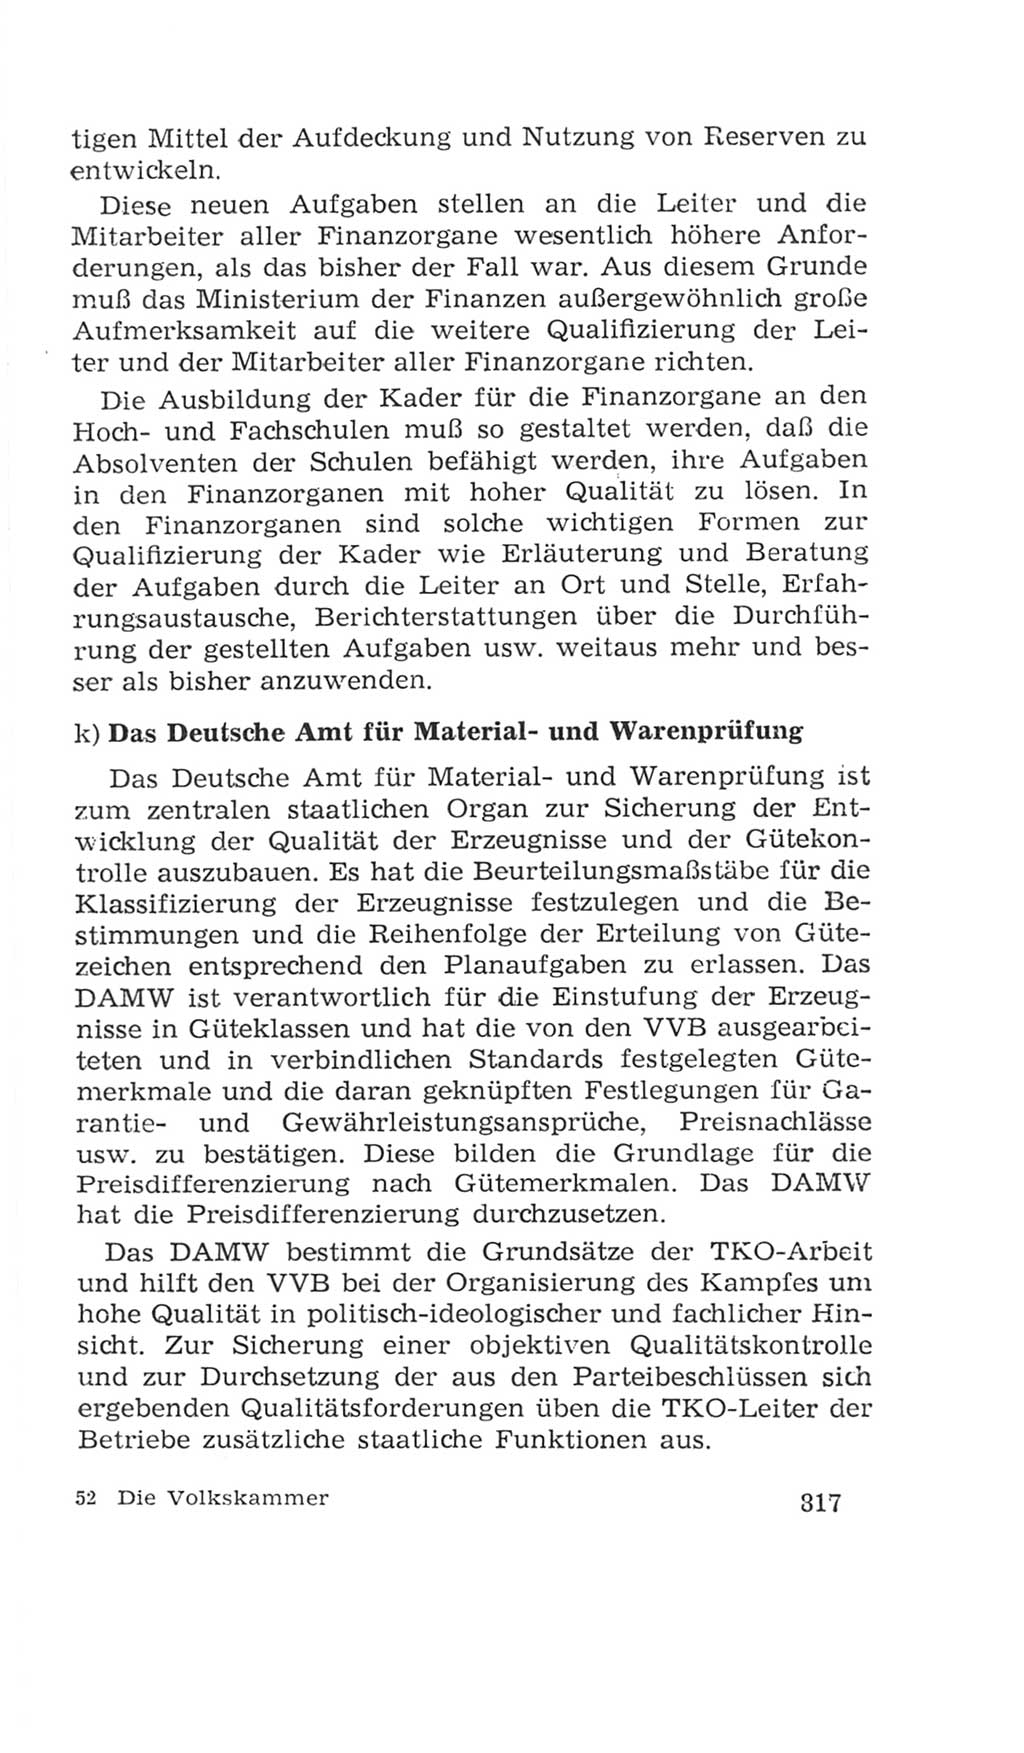 Volkskammer (VK) der Deutschen Demokratischen Republik (DDR), 4. Wahlperiode 1963-1967, Seite 817 (VK. DDR 4. WP. 1963-1967, S. 817)